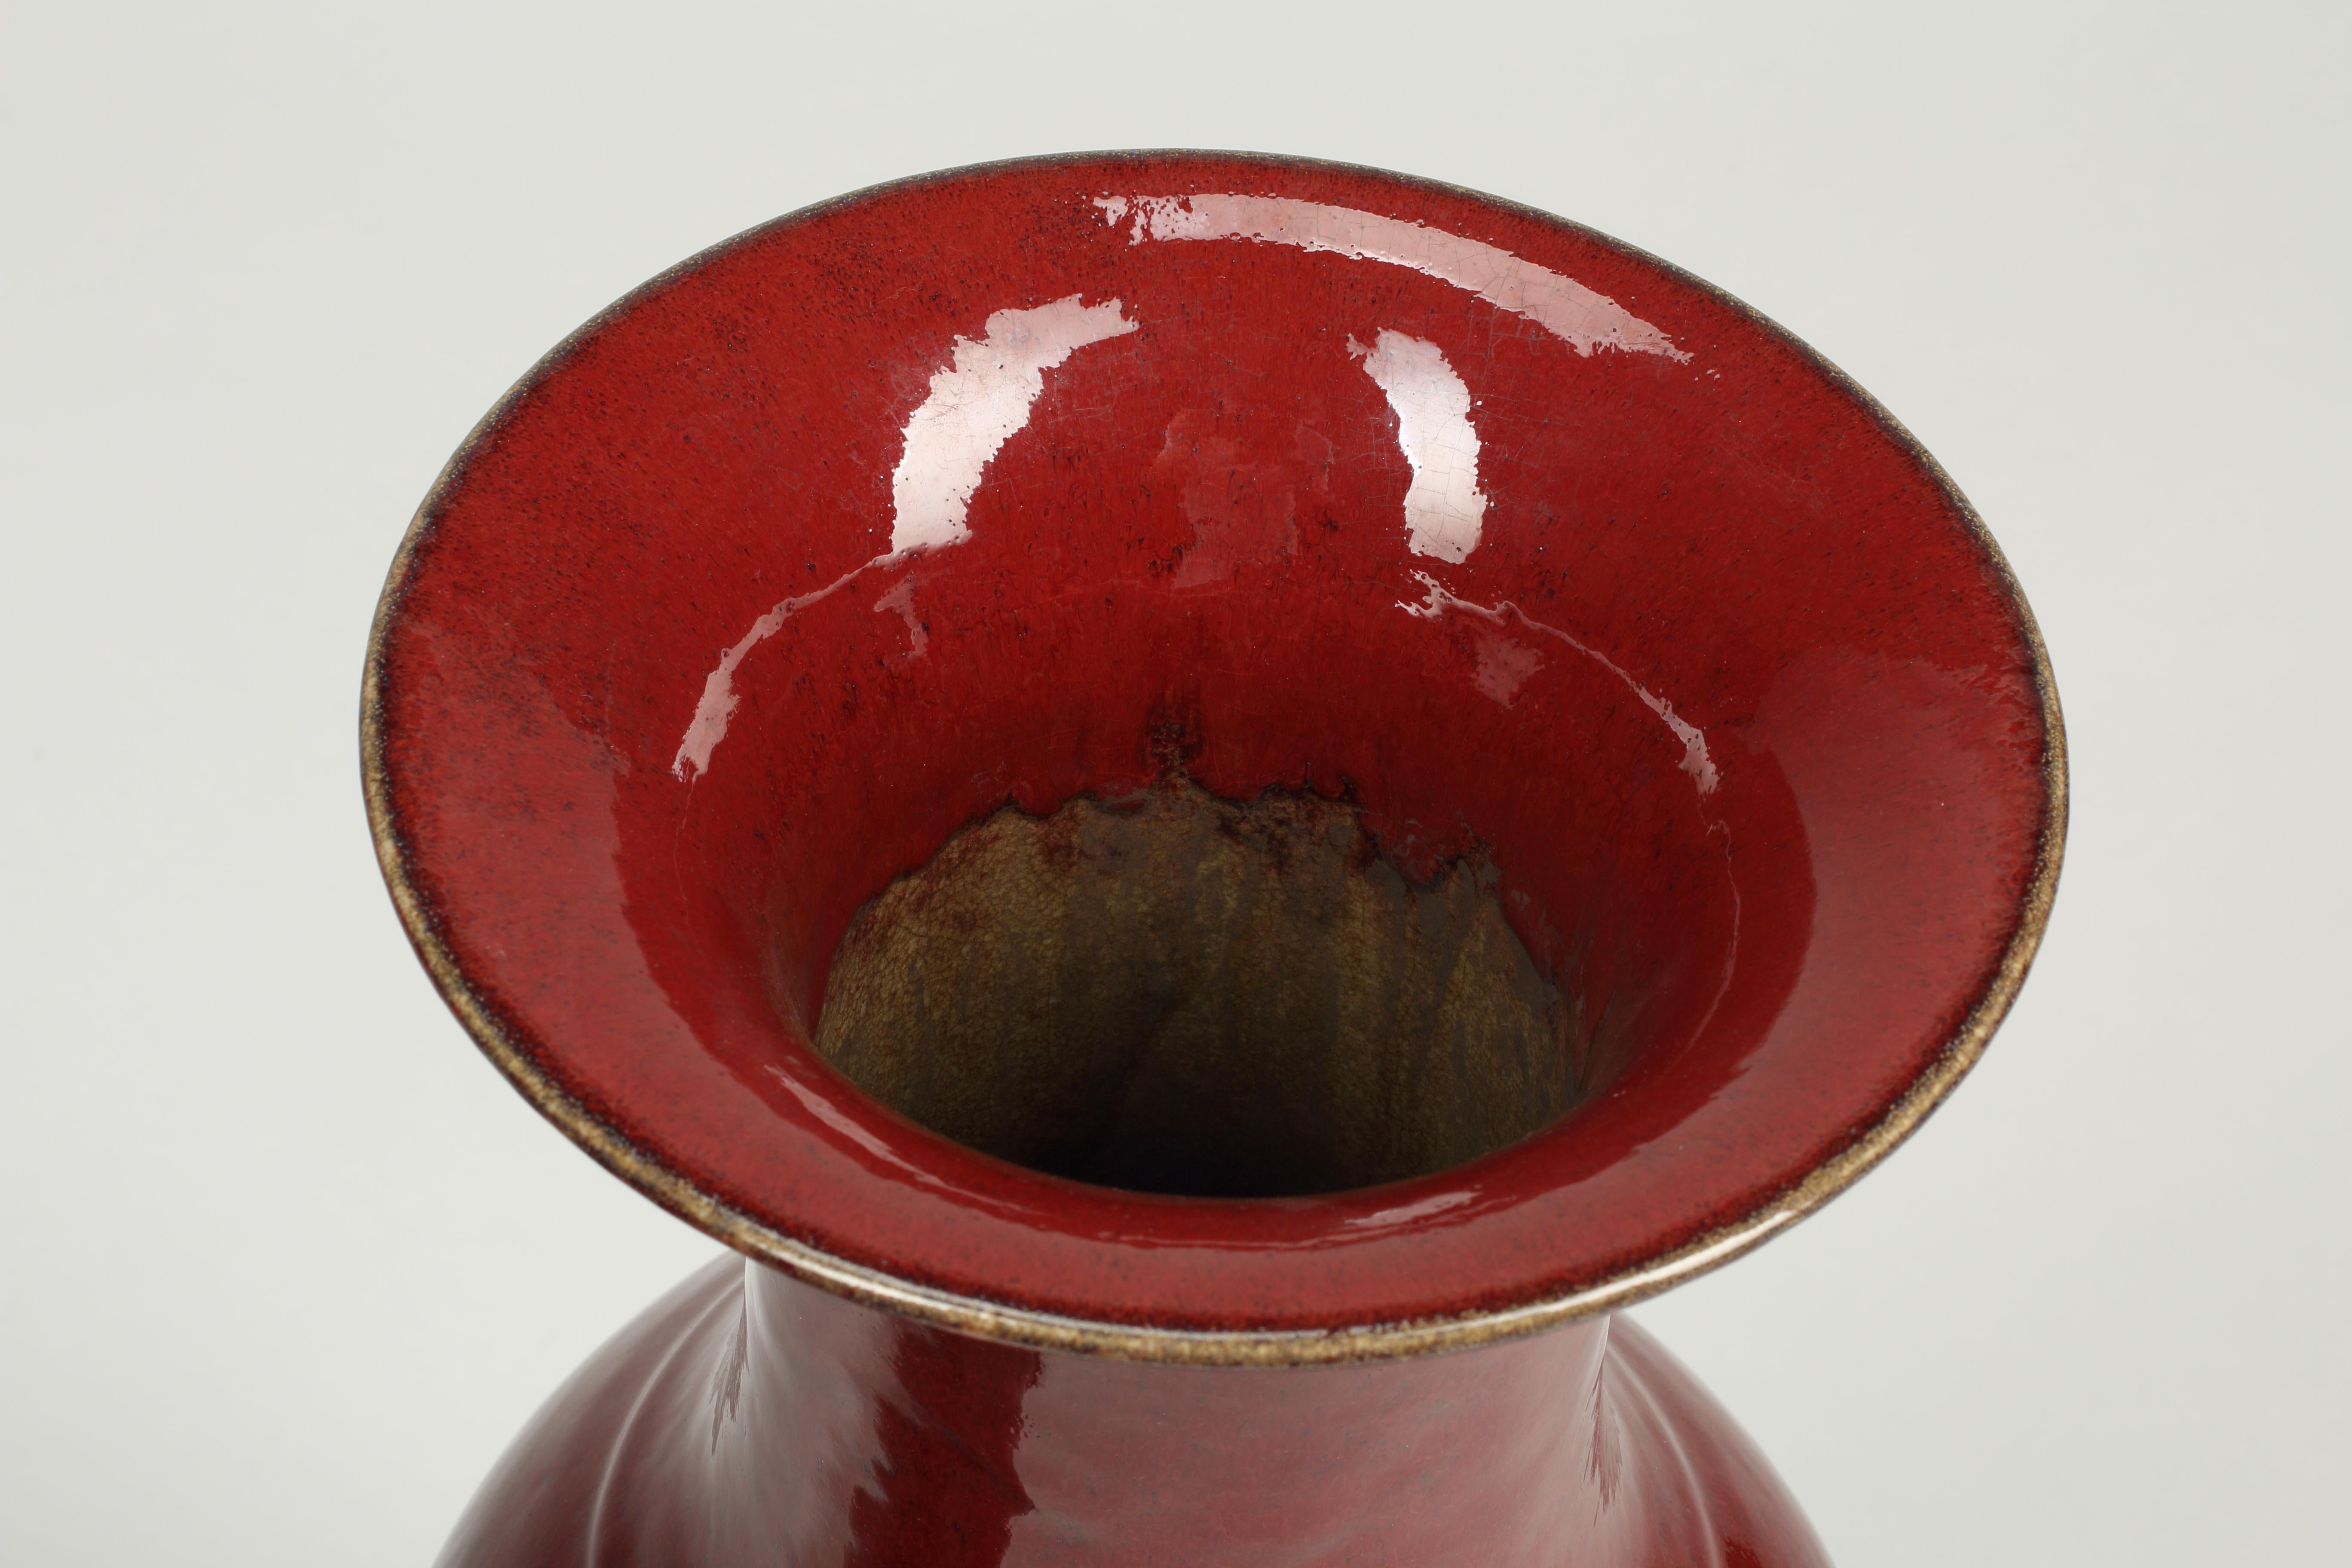 Paire de grands vases glacés sang-de-boeuf très décoratifs, 20e siècle.
Le récipient balustre s'élève à partir d'un pied lippu vers un corps à épaules hautes et une bouche en trompette, recouverte d'une riche glaçure rouge vitreuse.